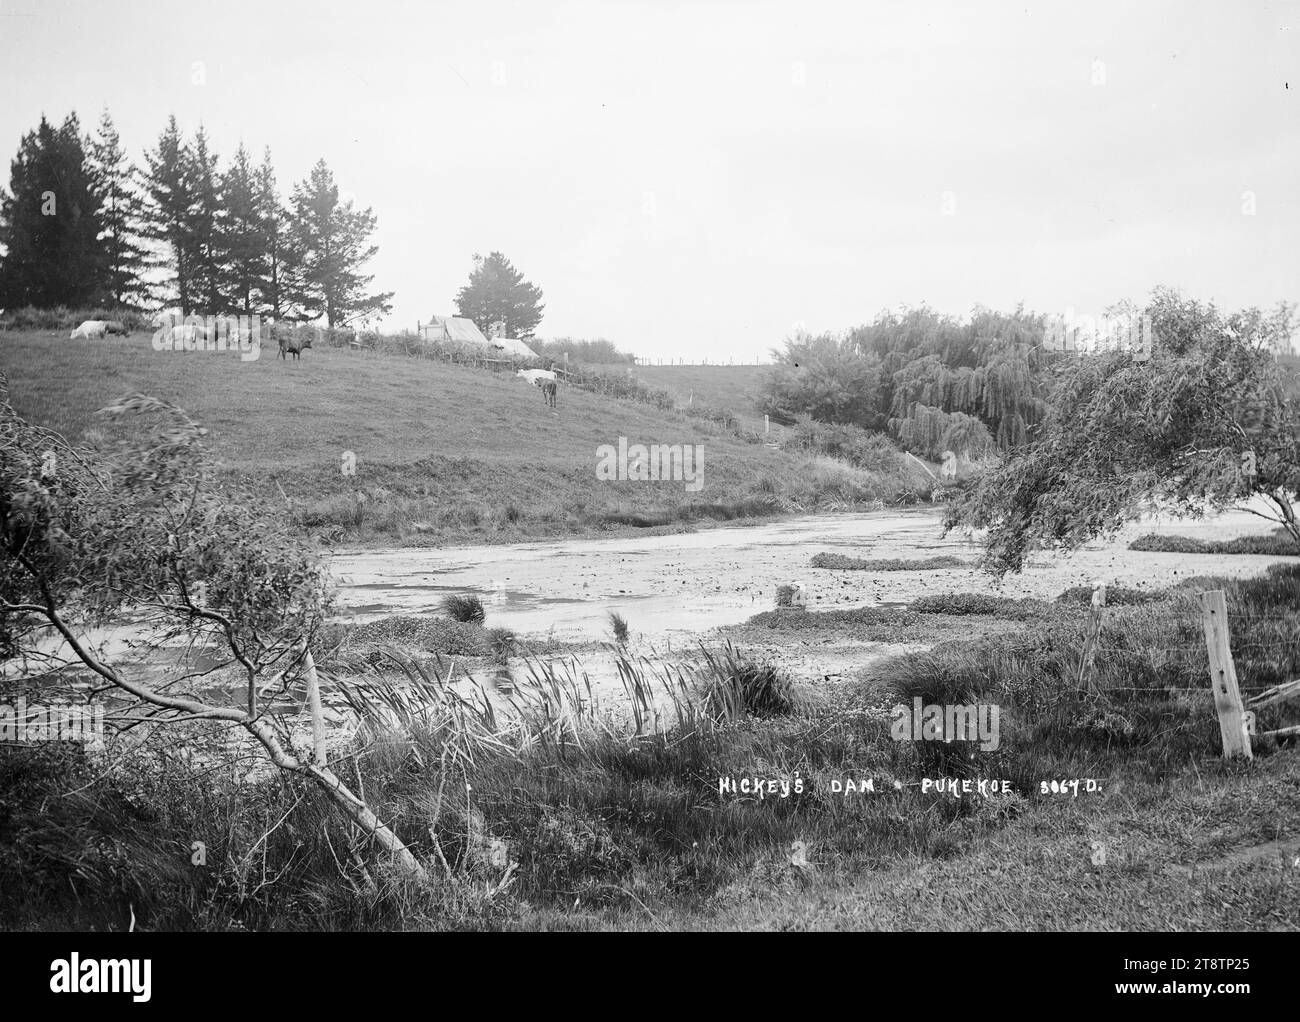 Hickey's Dam, Pukekohe, Blick auf ein Gewässer, das als Hickey's Dam bekannt ist. Auf der anderen Seite des Damms weiden Kühe, und auf dem Dach eines Gebäudes (Bauernhaus?). Ist nur auf der anderen Seite der Hecke sichtbar. Aufgenommen in den frühen 1900er Jahren Stockfoto